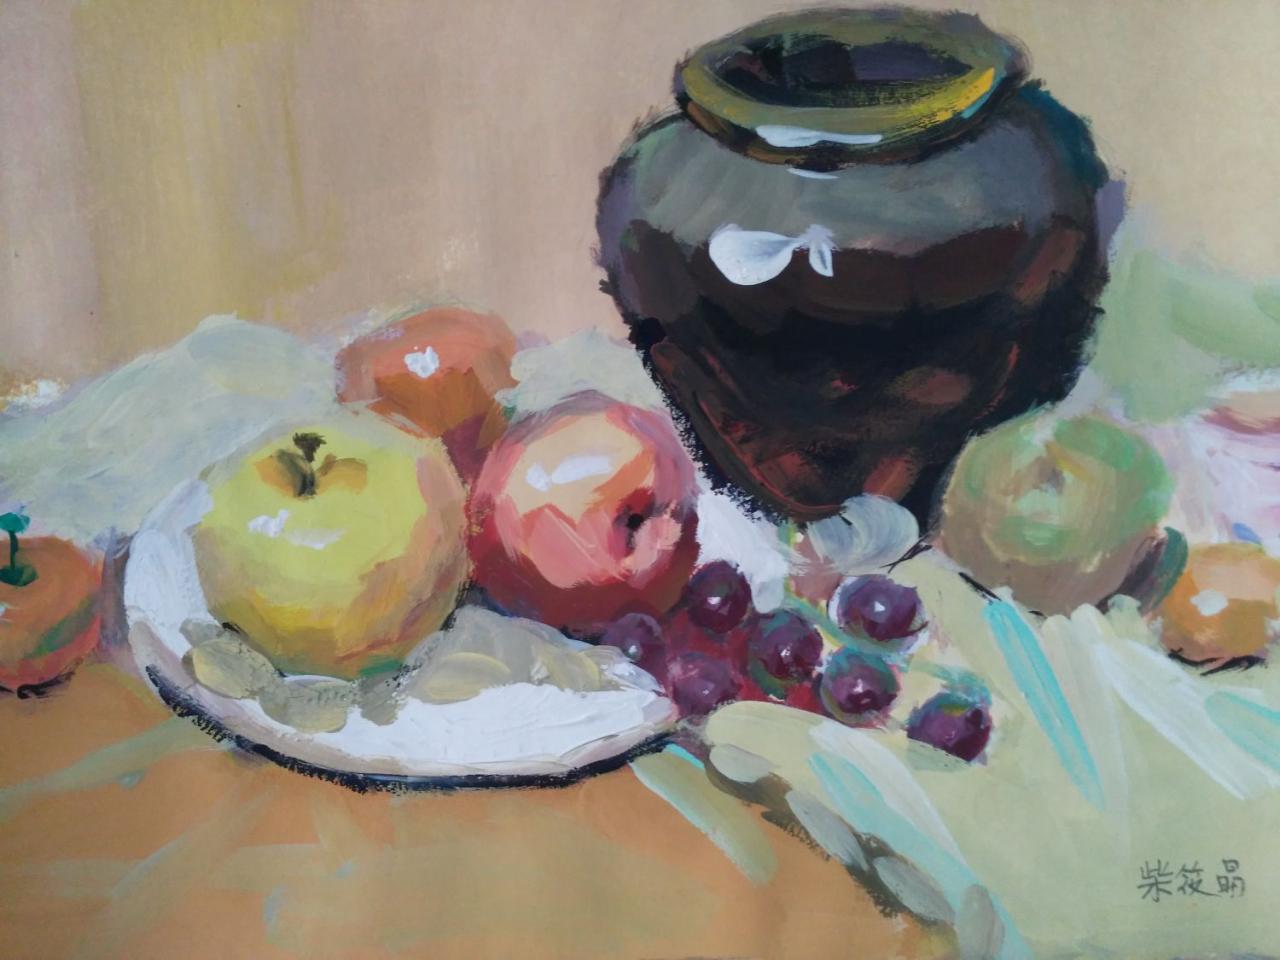 水粉静物 陶罐、苹果、葡萄、盘子等 柴筱晶画